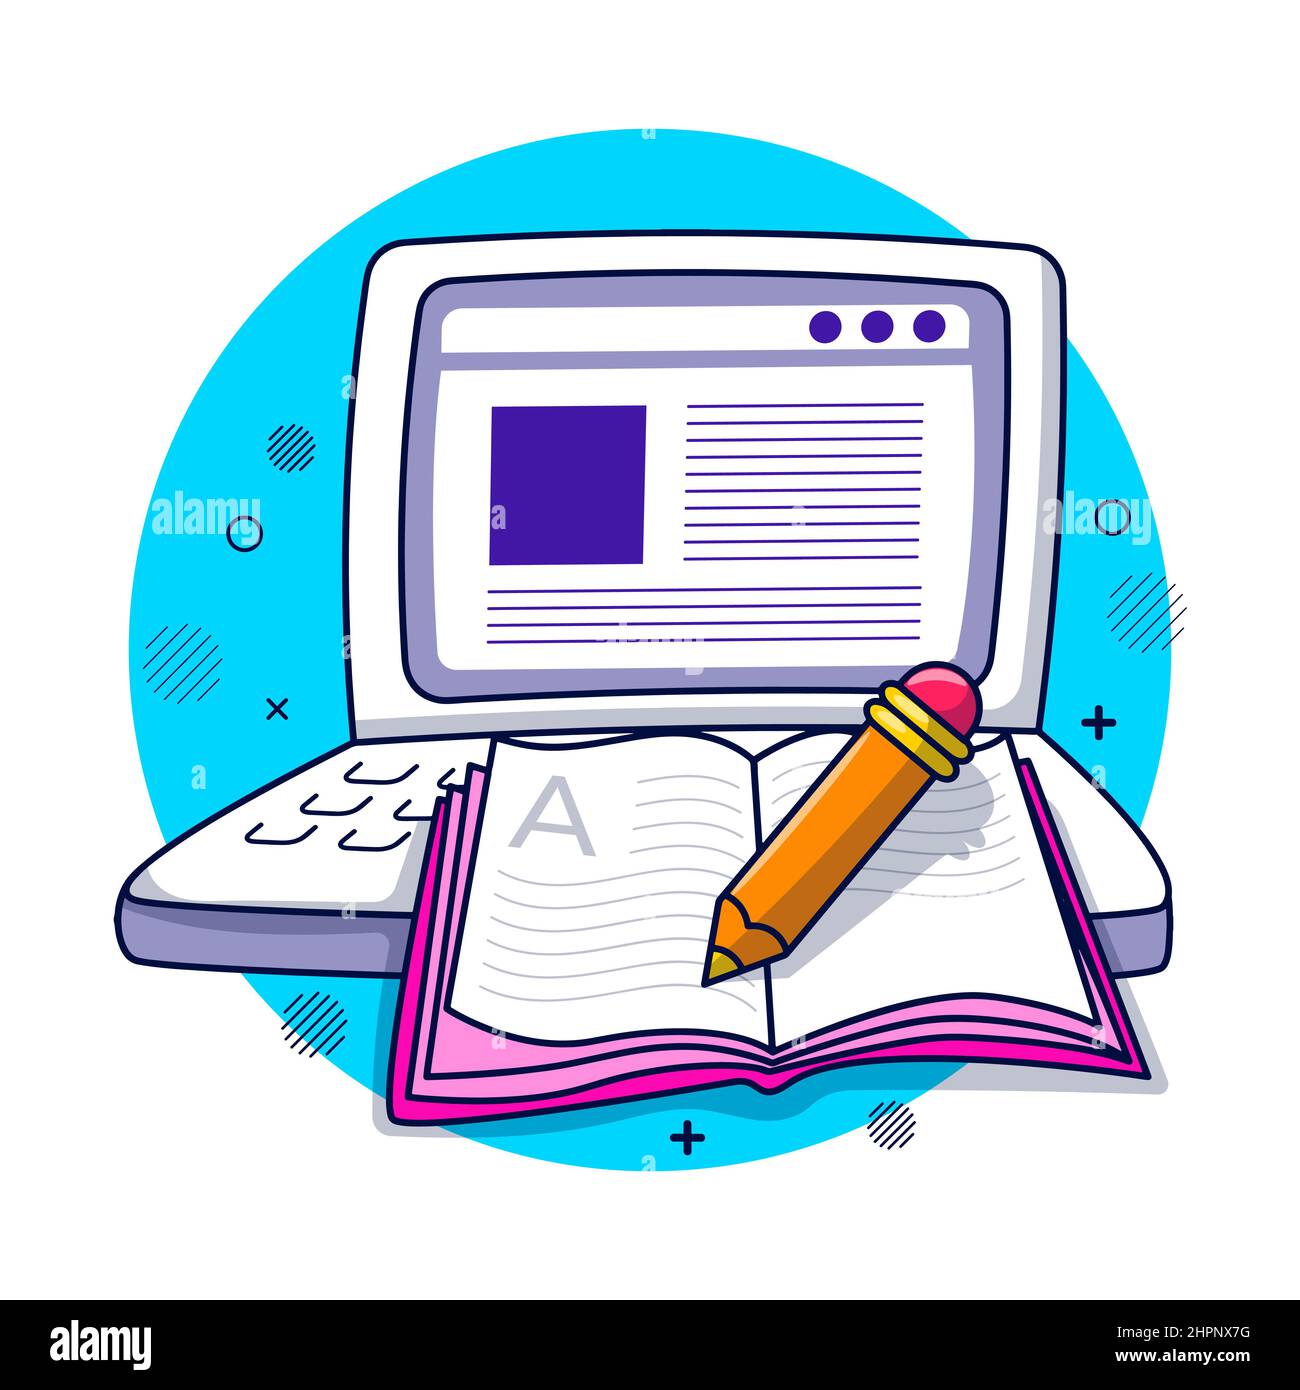 Laptop mit Bleistift und Buch, pädagogische handgezeichnete Cartoon-Illustration Stock Vektor